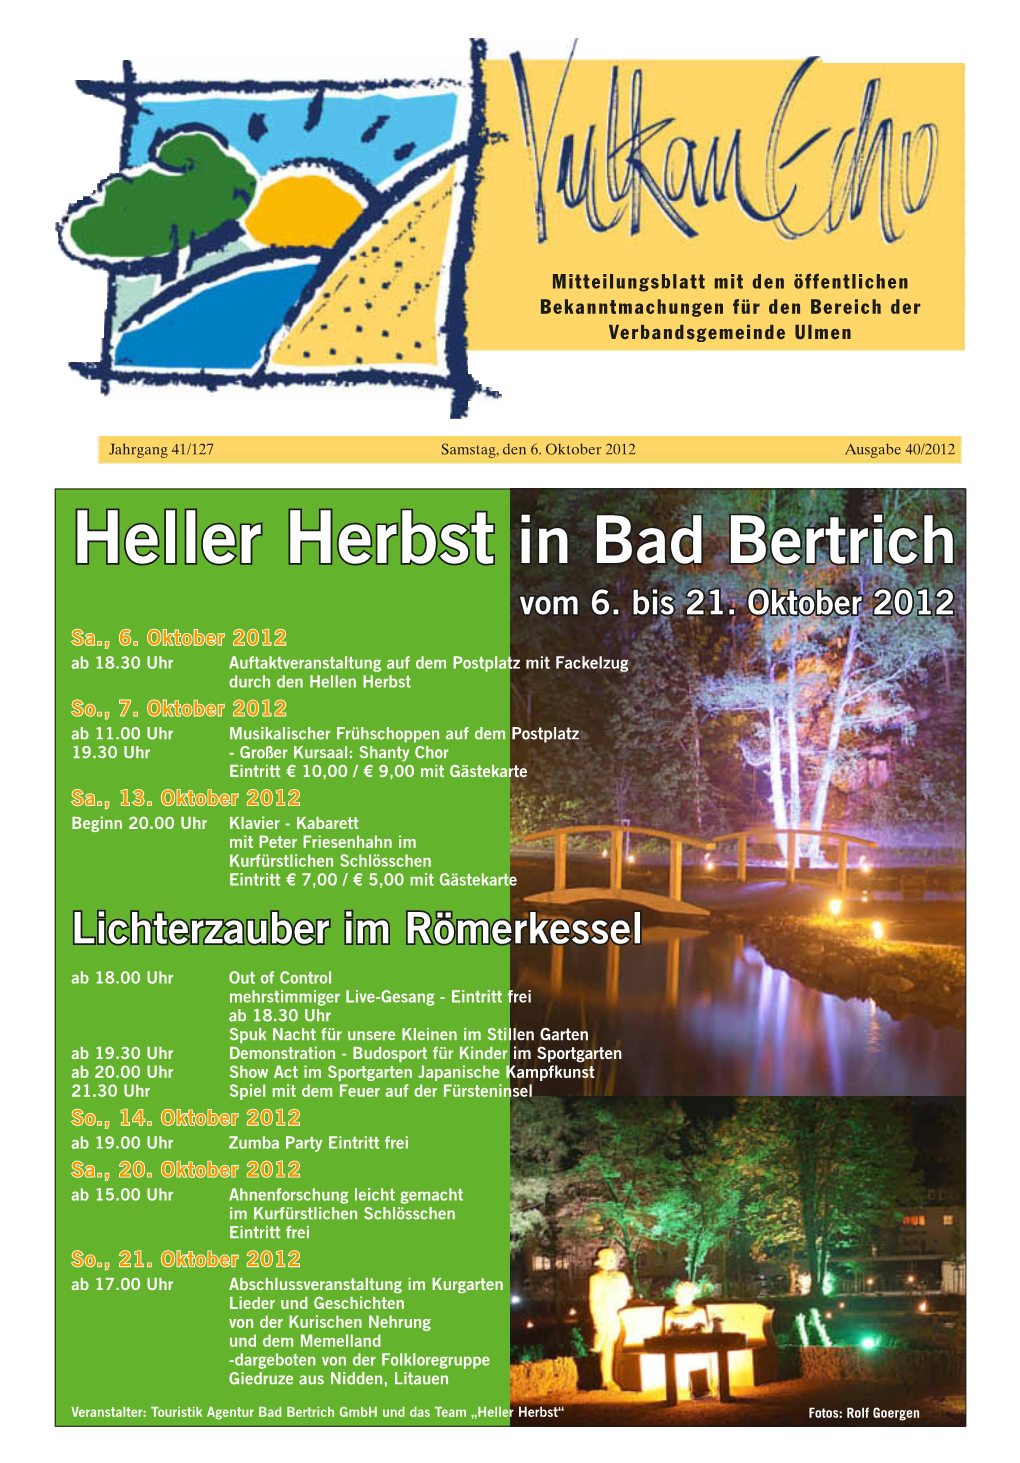 Heller Herbst in Bad Bertrich Vom 6